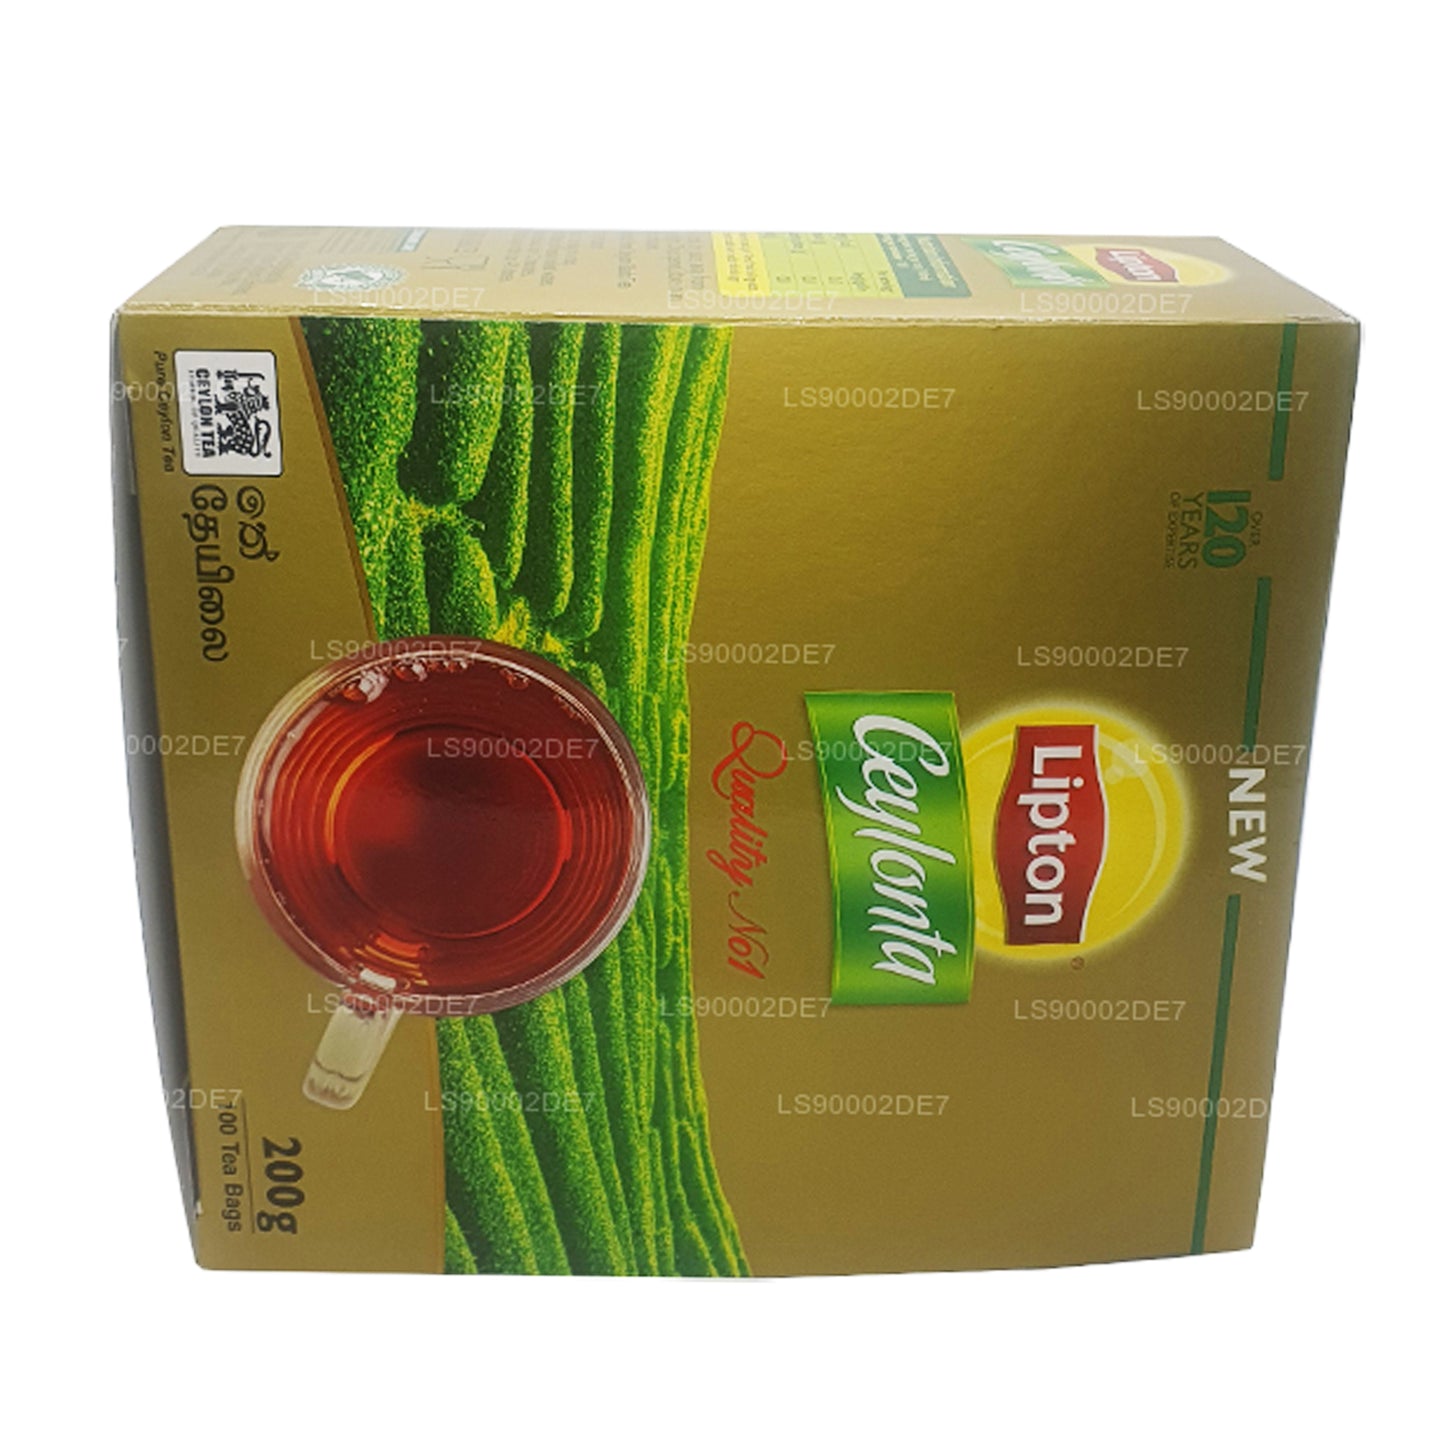 Lipton Ceylonta Tee (200 g) 100 Teebeutel